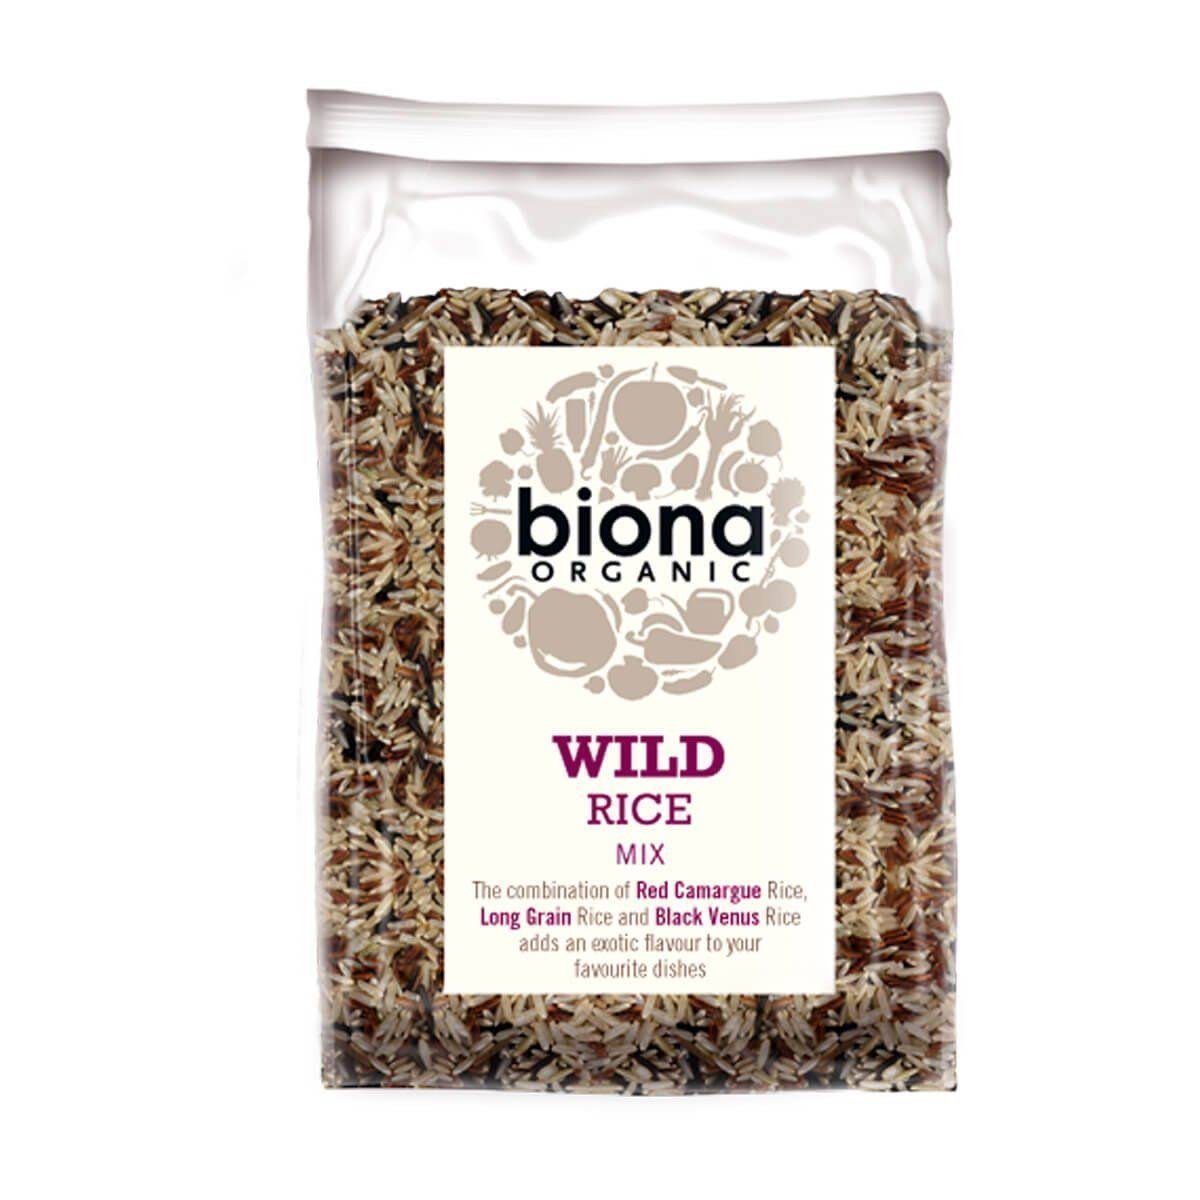 Biona Organic Wild Rice Mix, 500 G